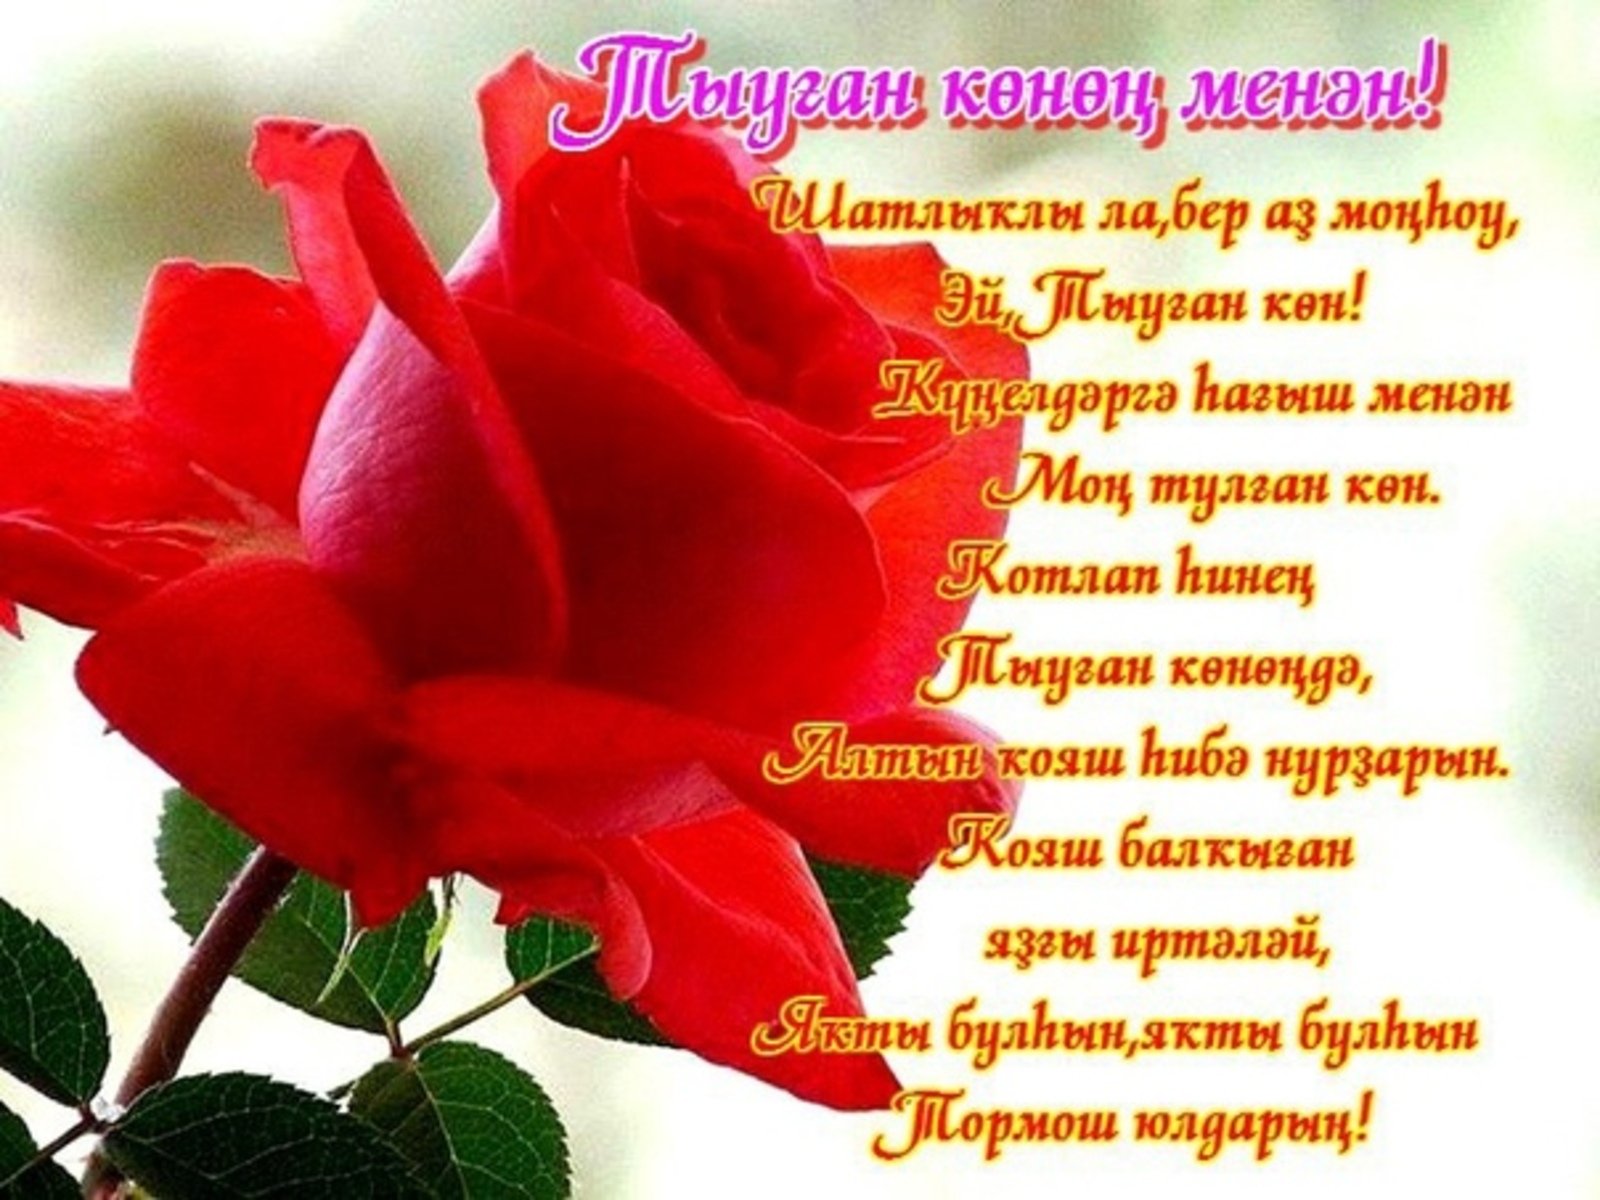 Поздравление на башкирском. Открытки с днём рождения на башкирском. Поздравления с днём рождения на башкирском языке. С днём рождения женщине на башкирском языке. Поздравление с юбилеем женщине на башкирском языке.